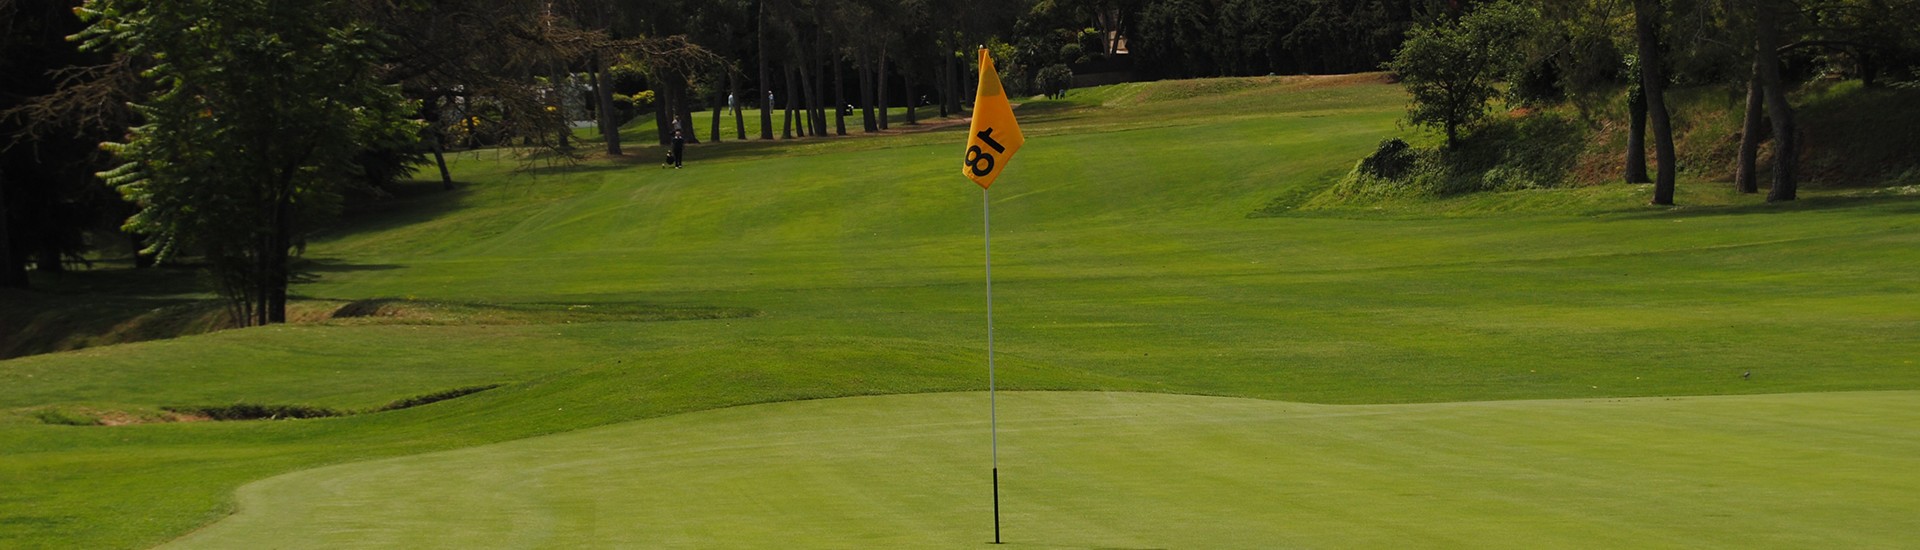 Club de Golf Sant Cugat